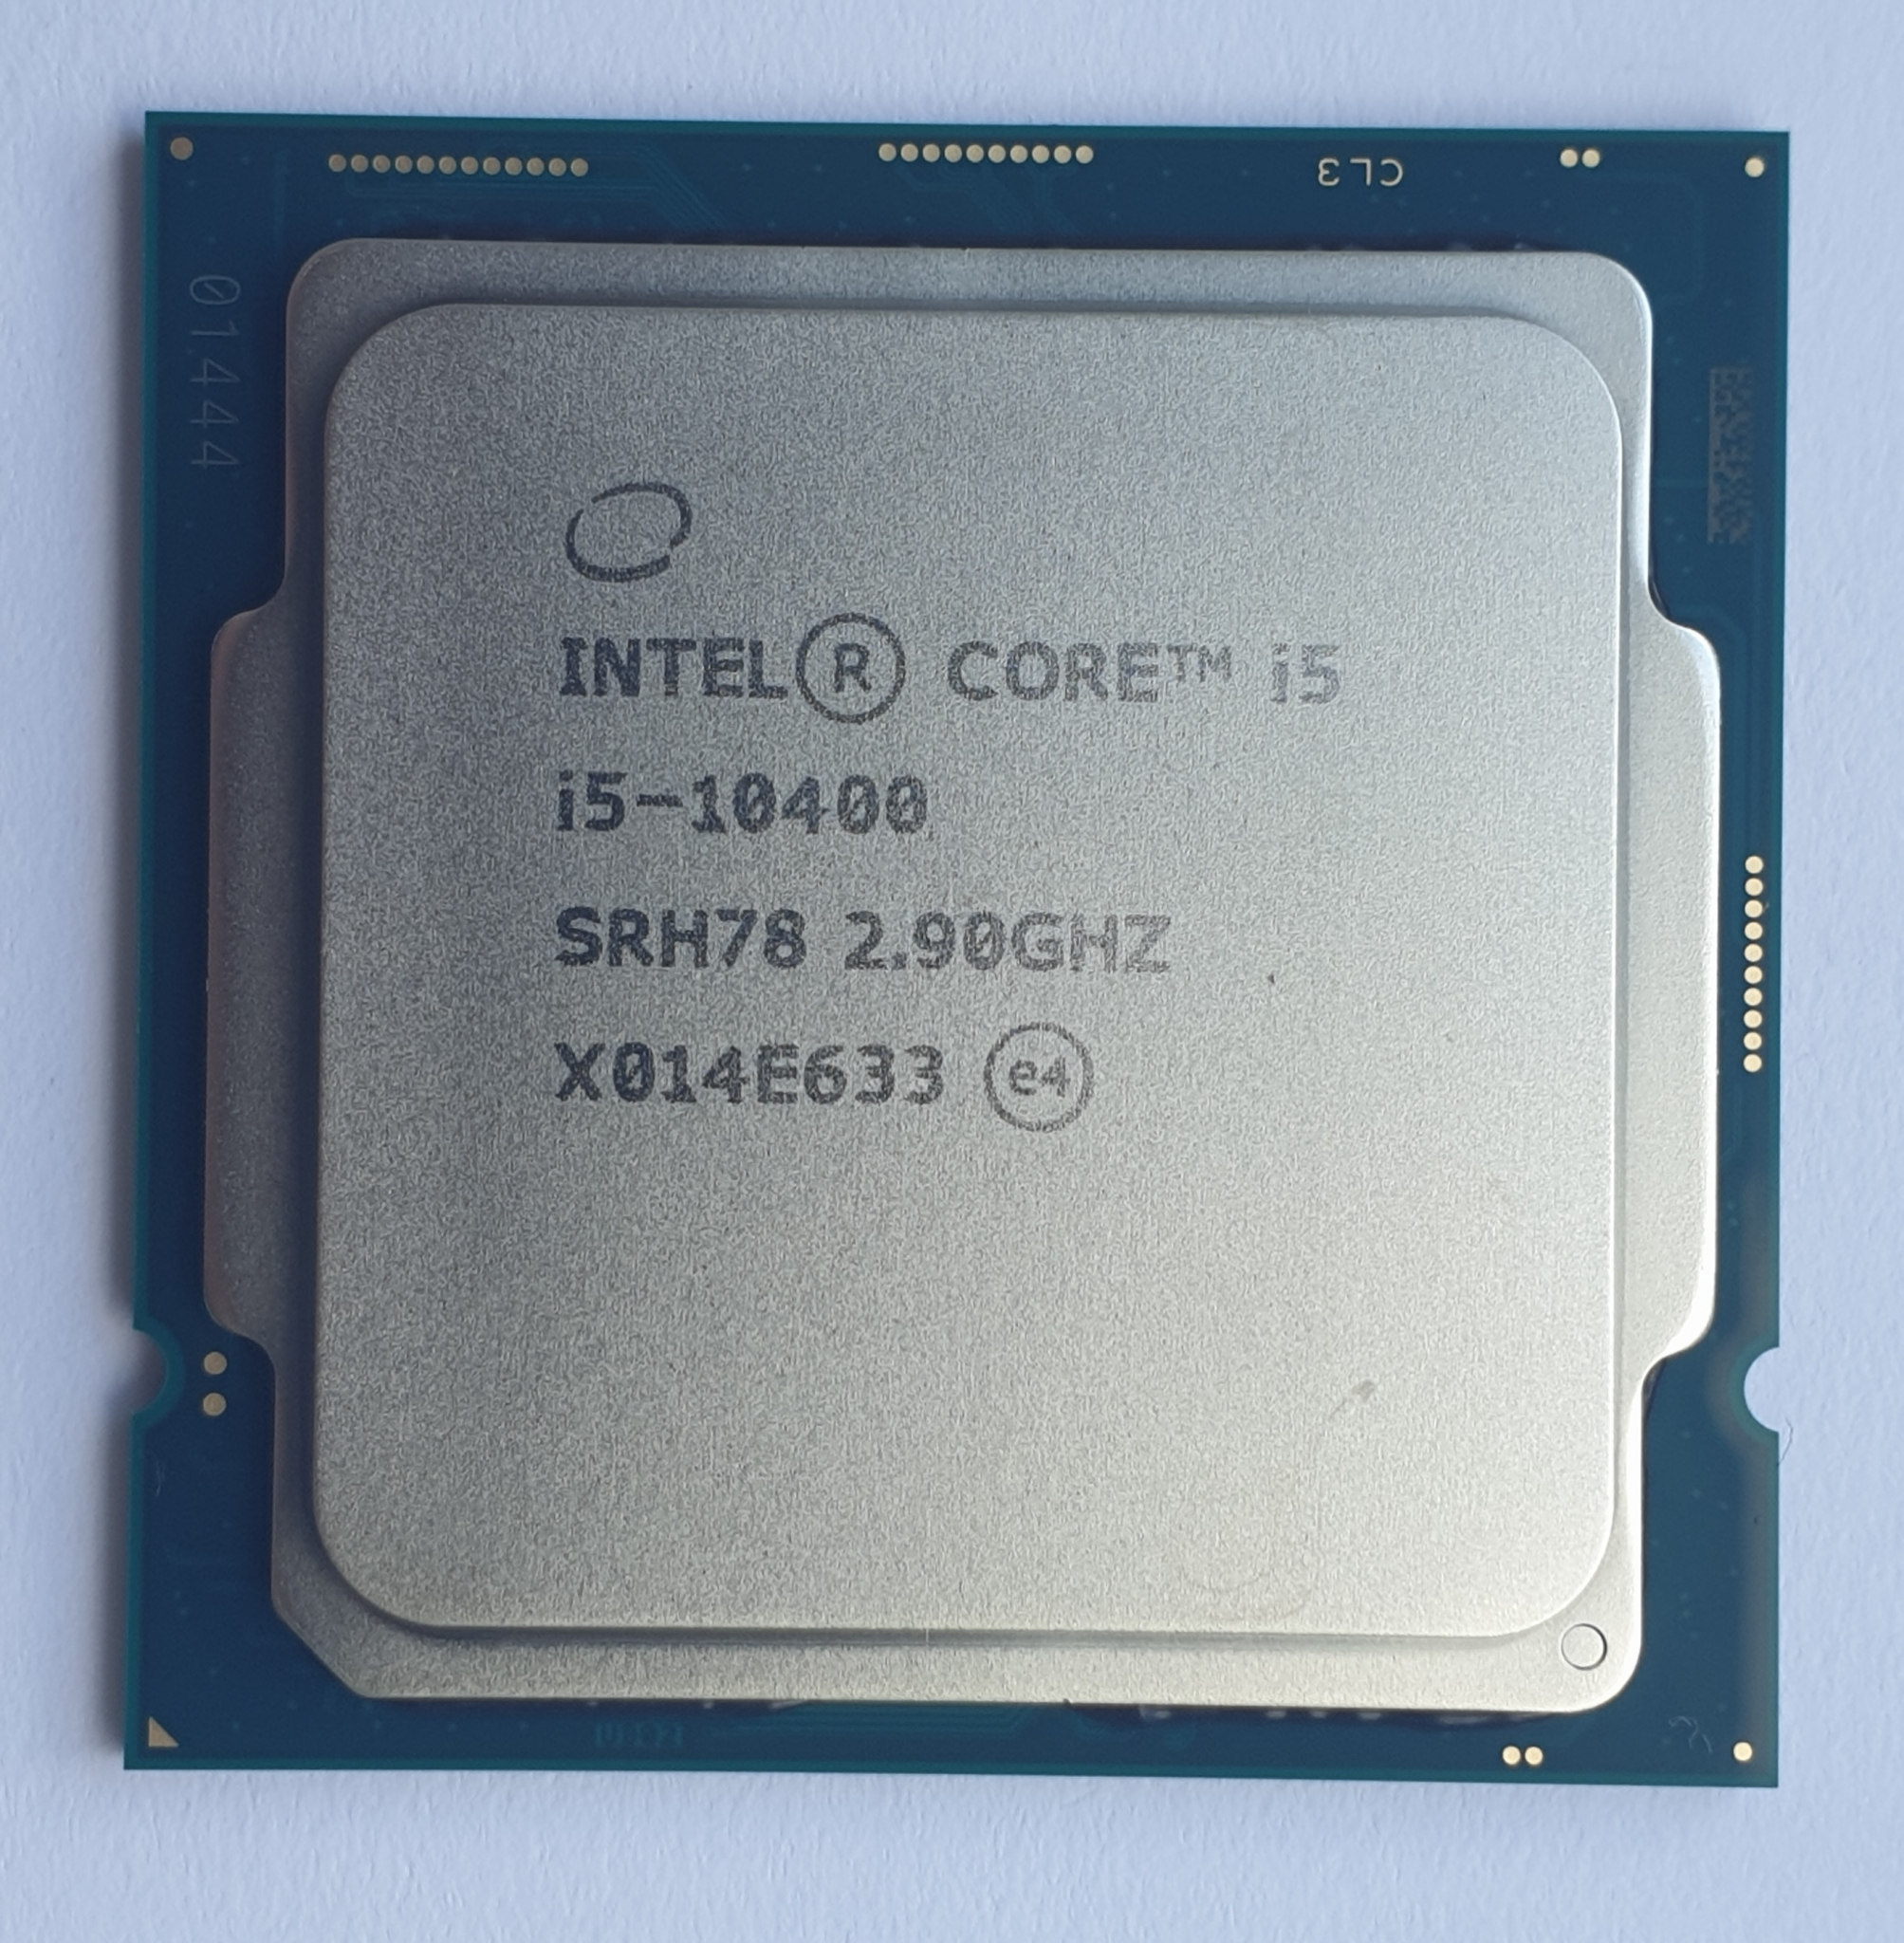 I5 2.9 ггц. Intel Core i5 10400, LGA 1200, OEM. Процессор Intel Core i5-10400f OEM. Процессор Intel Core i5-10400 lga1200 OEM. Процессор Intel Core i5-10400f CPU Z.